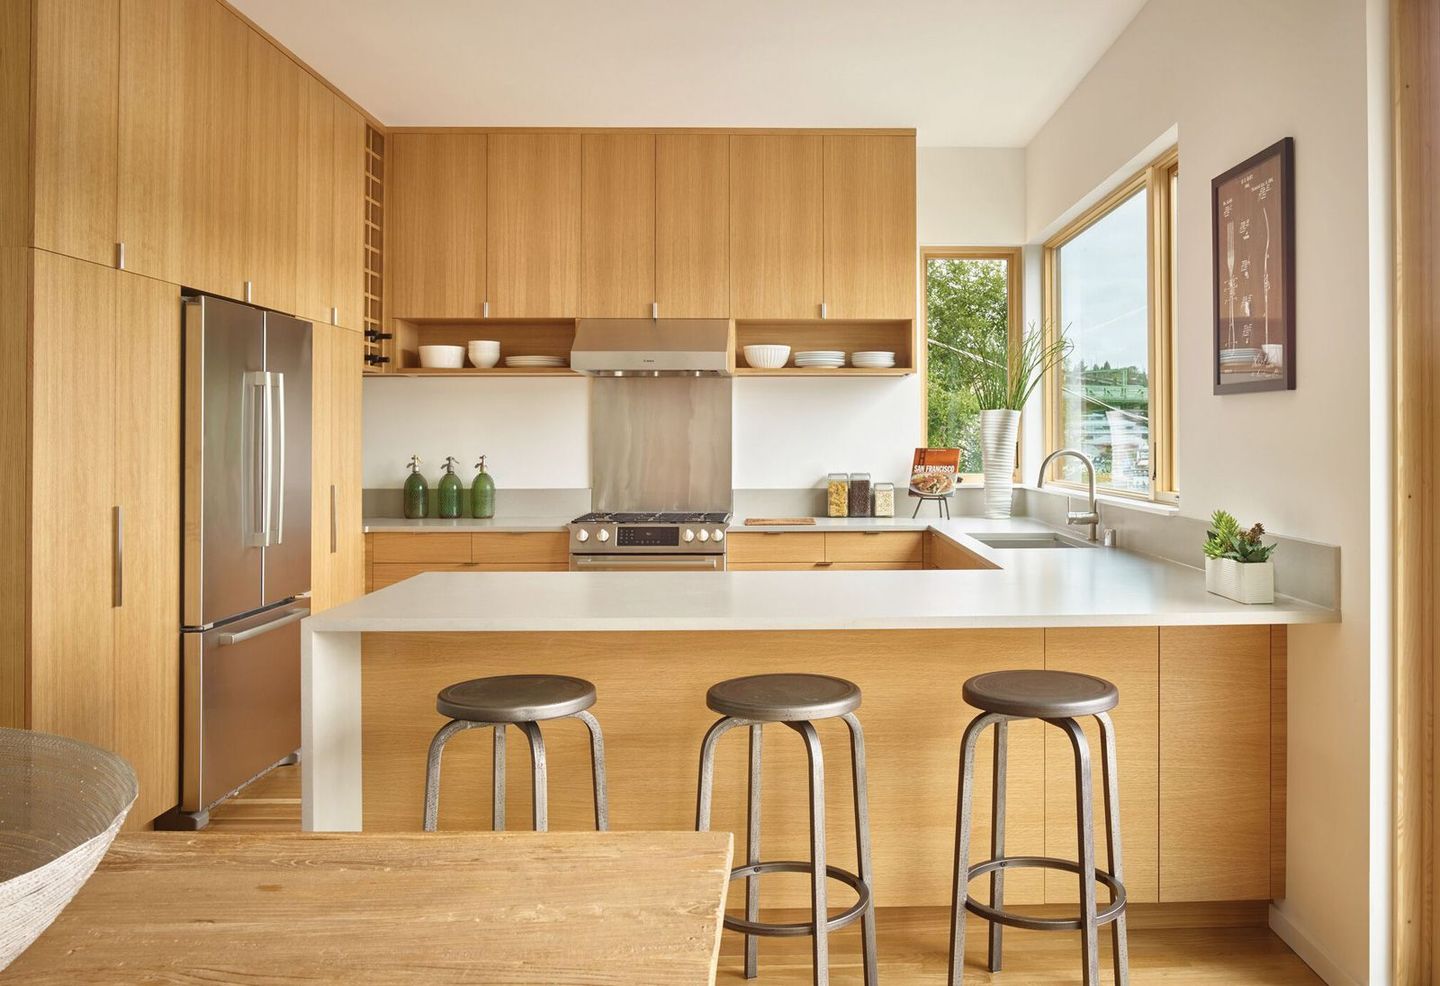 Model kitchen set Skandinavian identik menggunakan material kayu berwarna muda sebagai material utamanya.